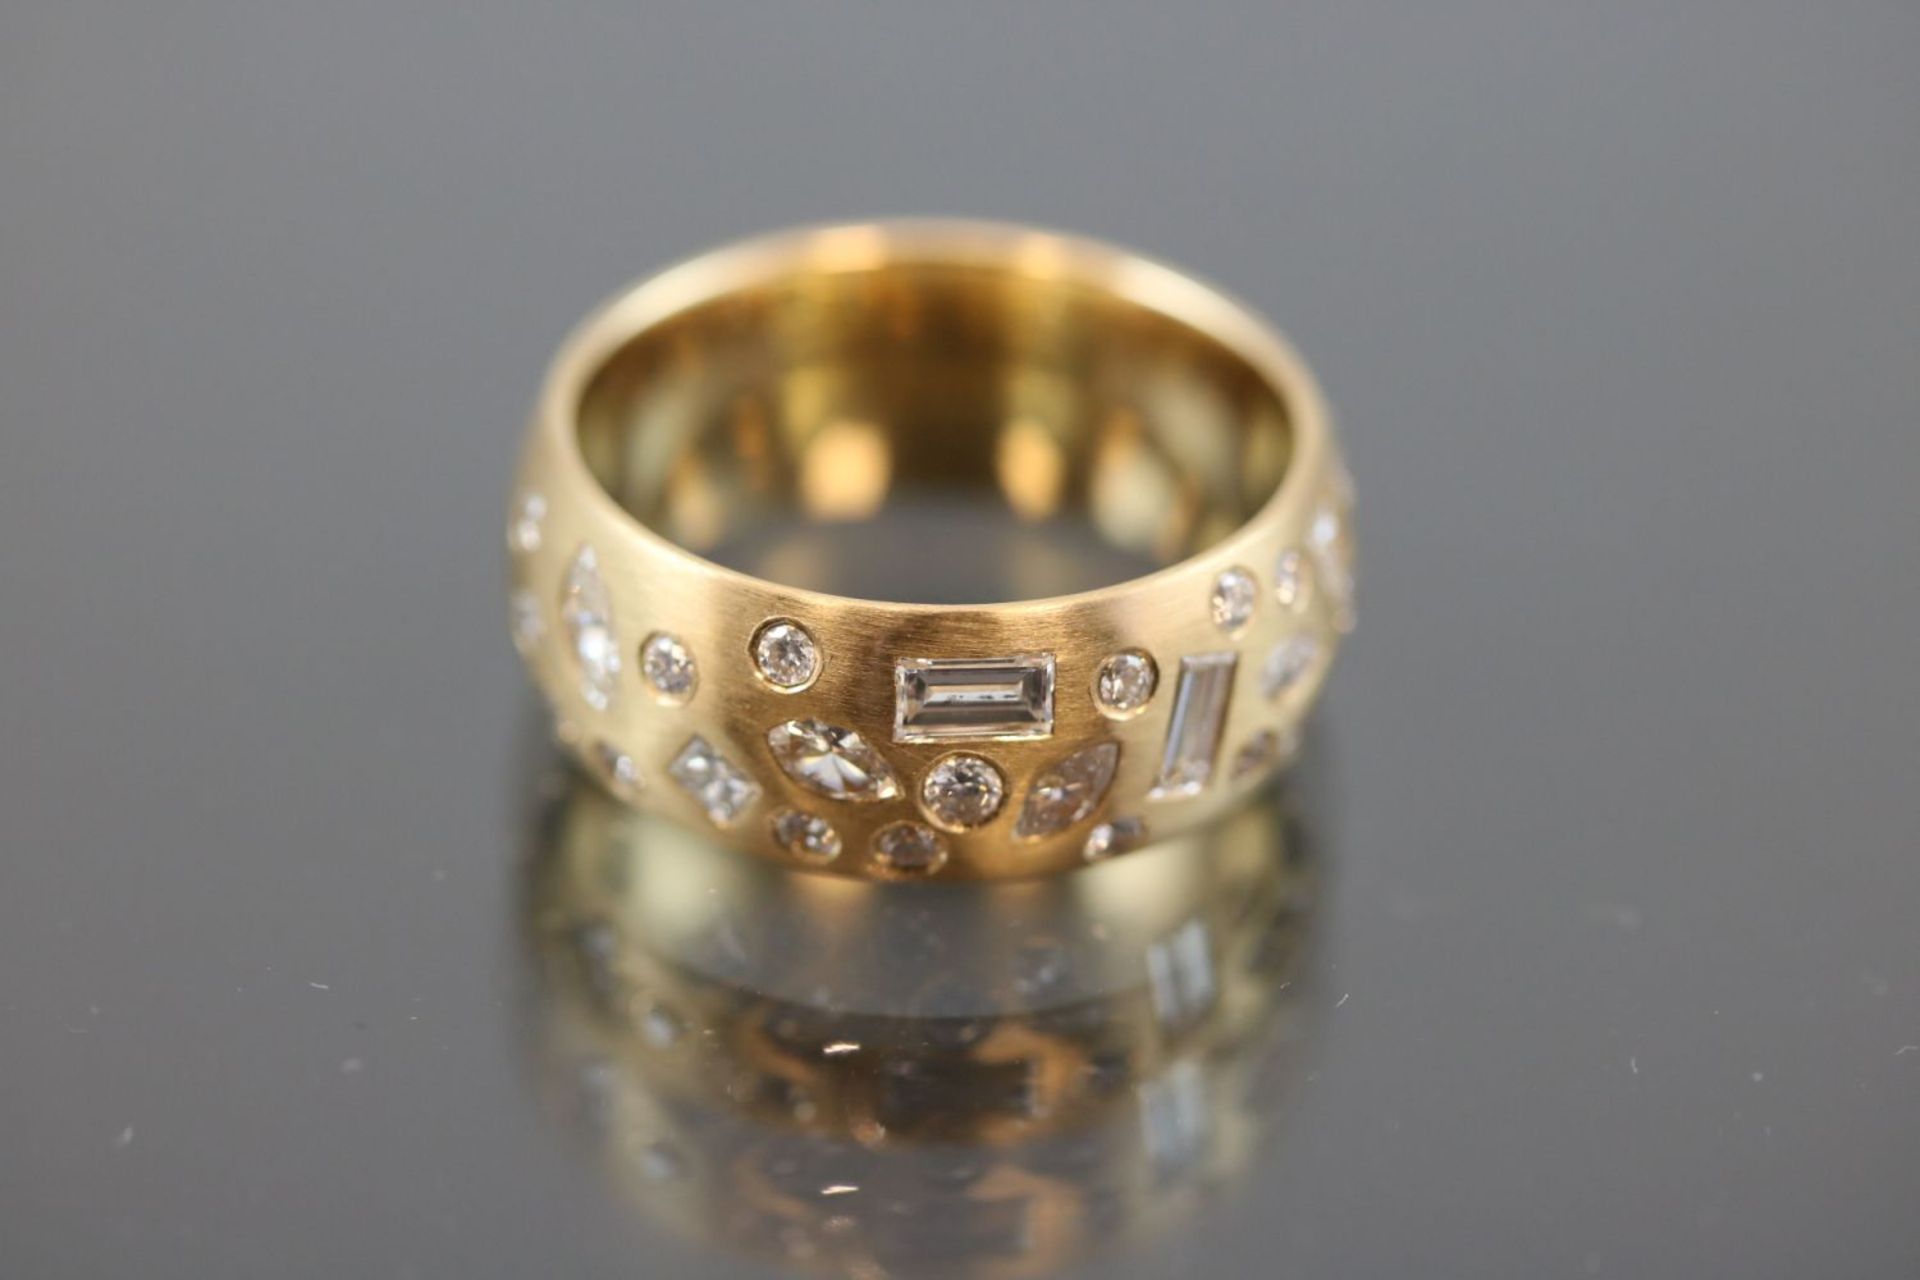 Design-Brillant-Ring, 750 Gelbgold10 Gramm 32 Brillanten / Diamanten, 2,37 ct., w/si. Ringgröße: